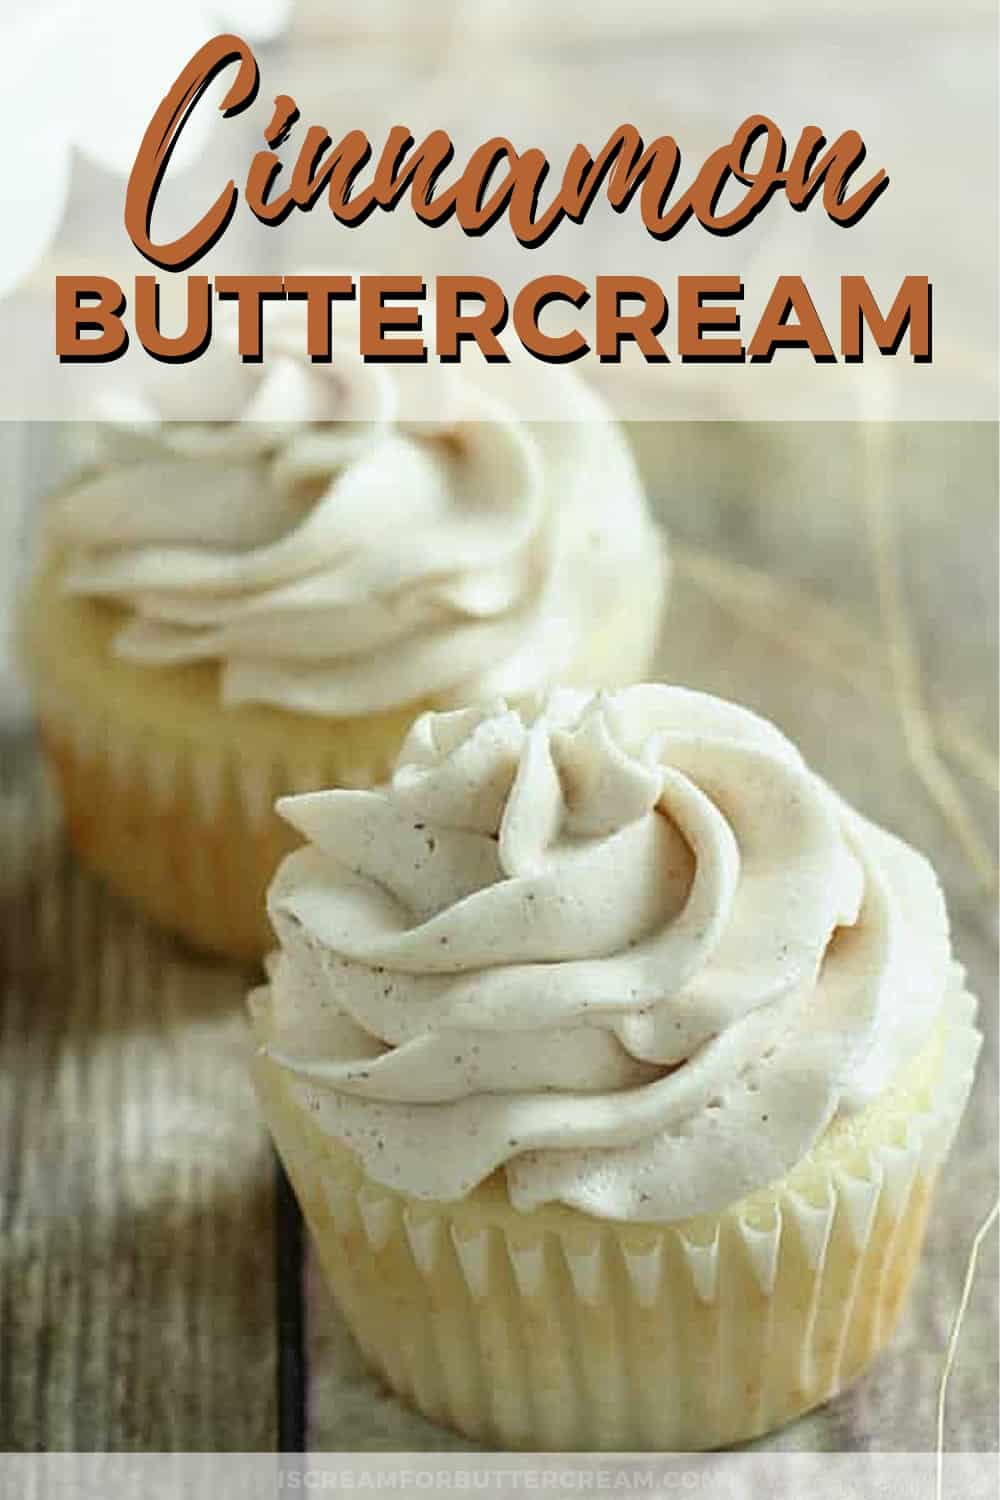 Cinnamon Buttercream - I Scream for Buttercream